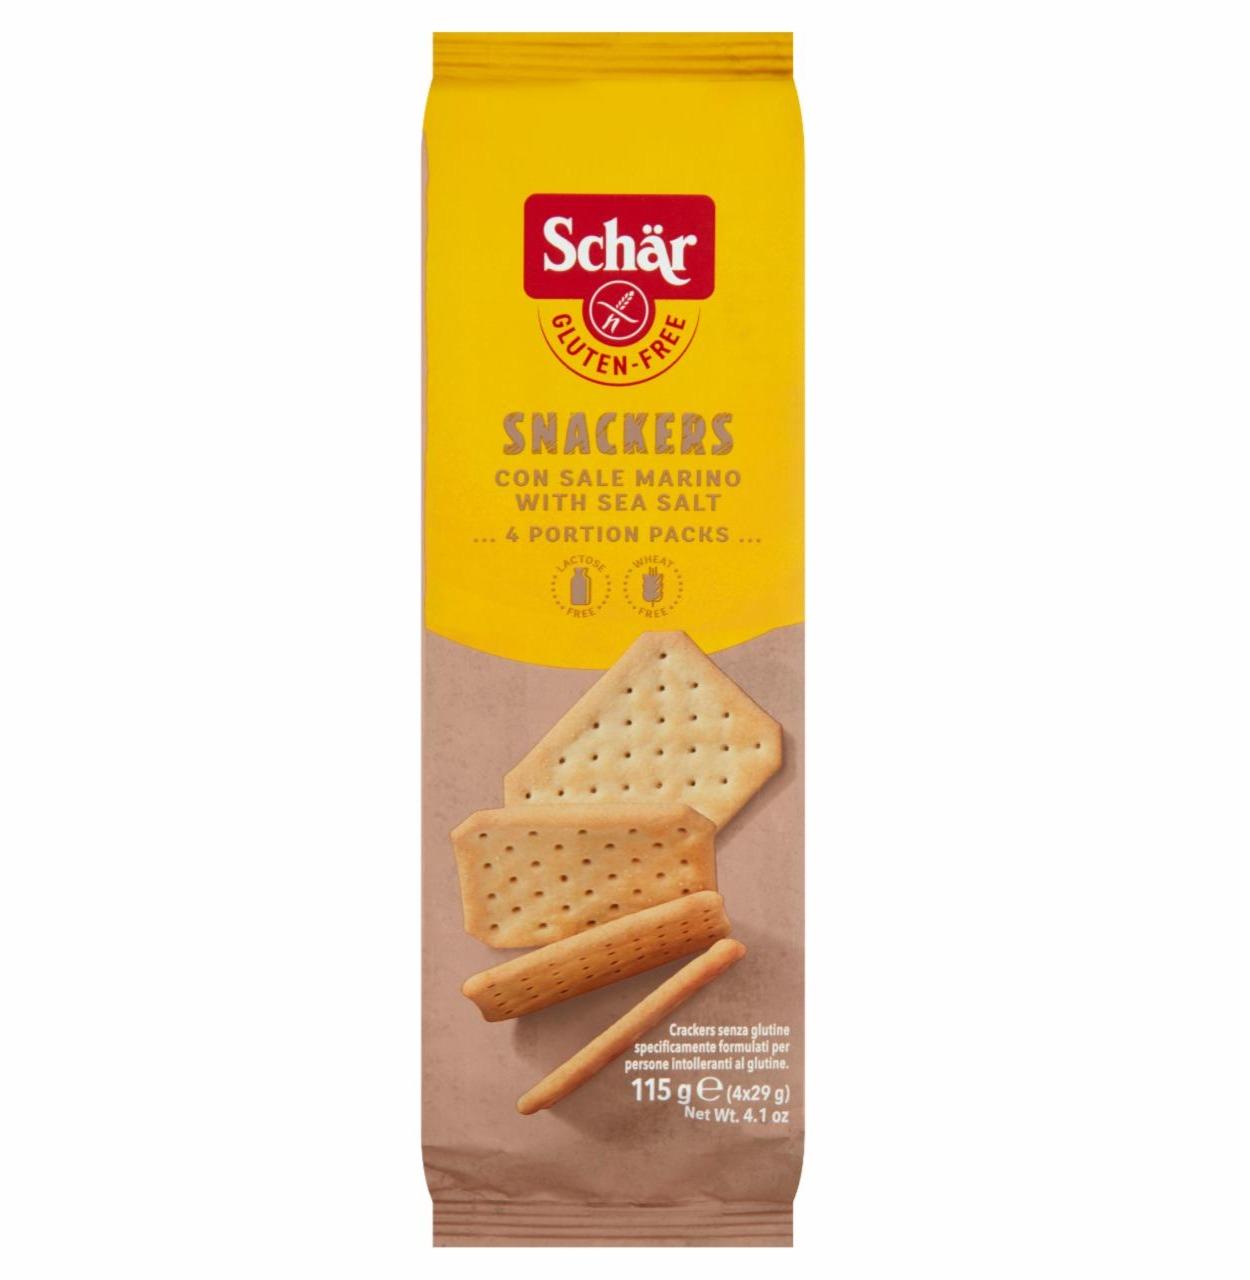 Képek - Schär Snackers gluténmentes cracker 4 x 29 g (115 g)